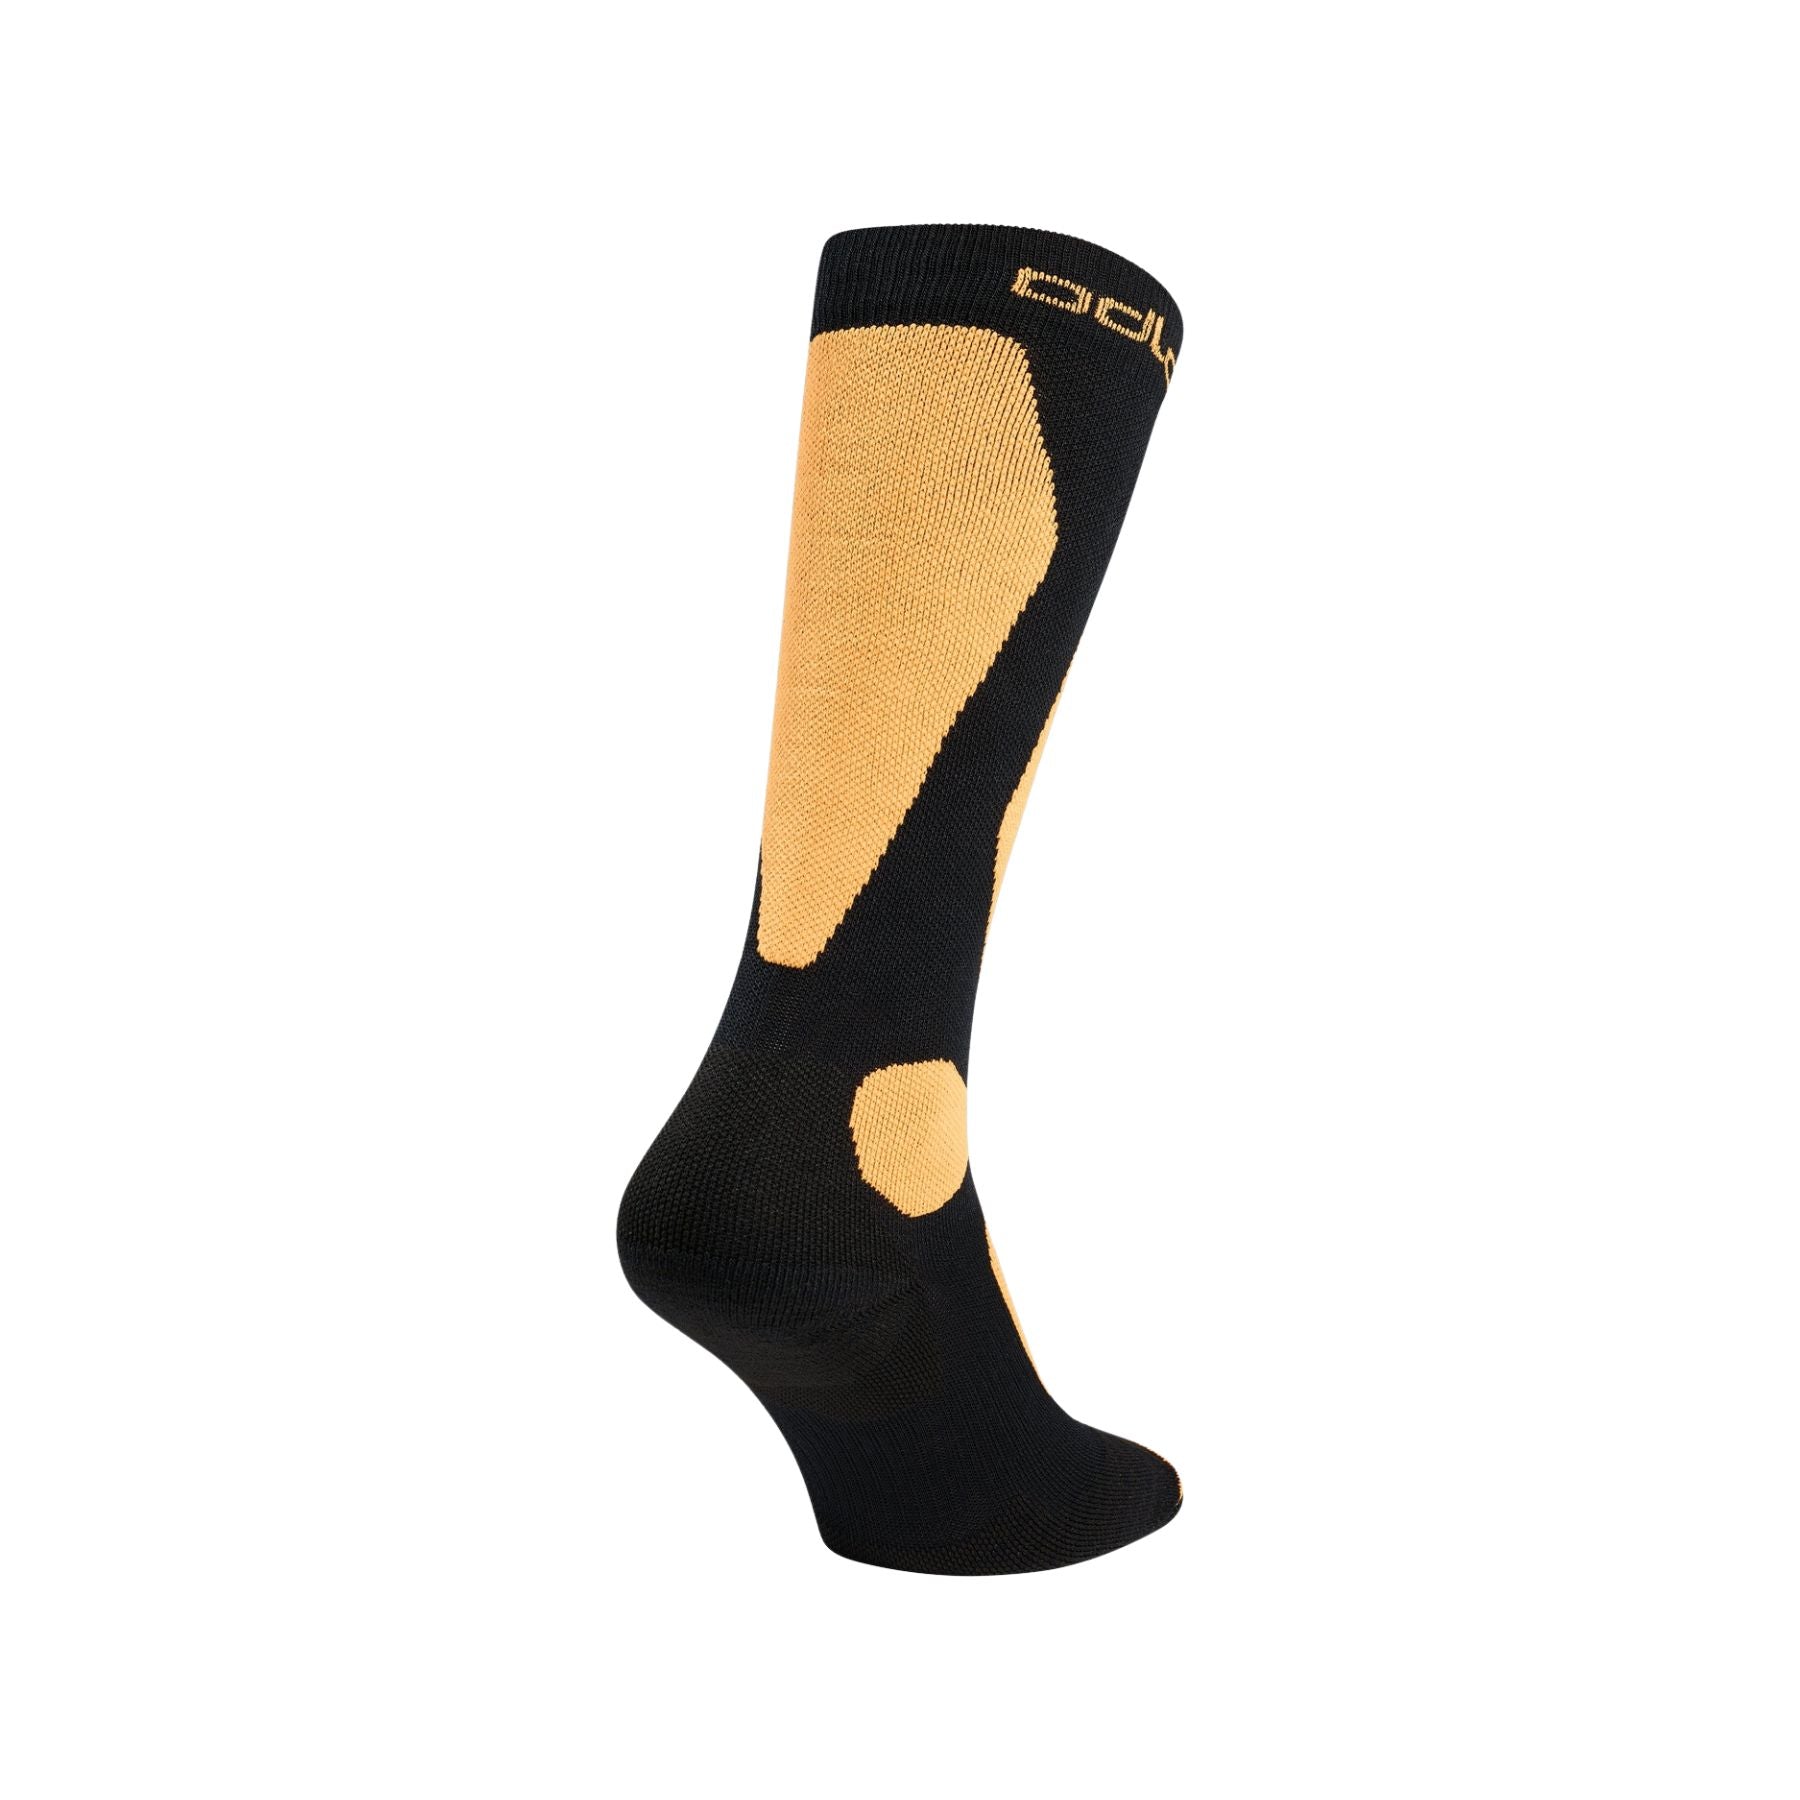 Odlo Primaloft® Pro socks in Black/Live Wire